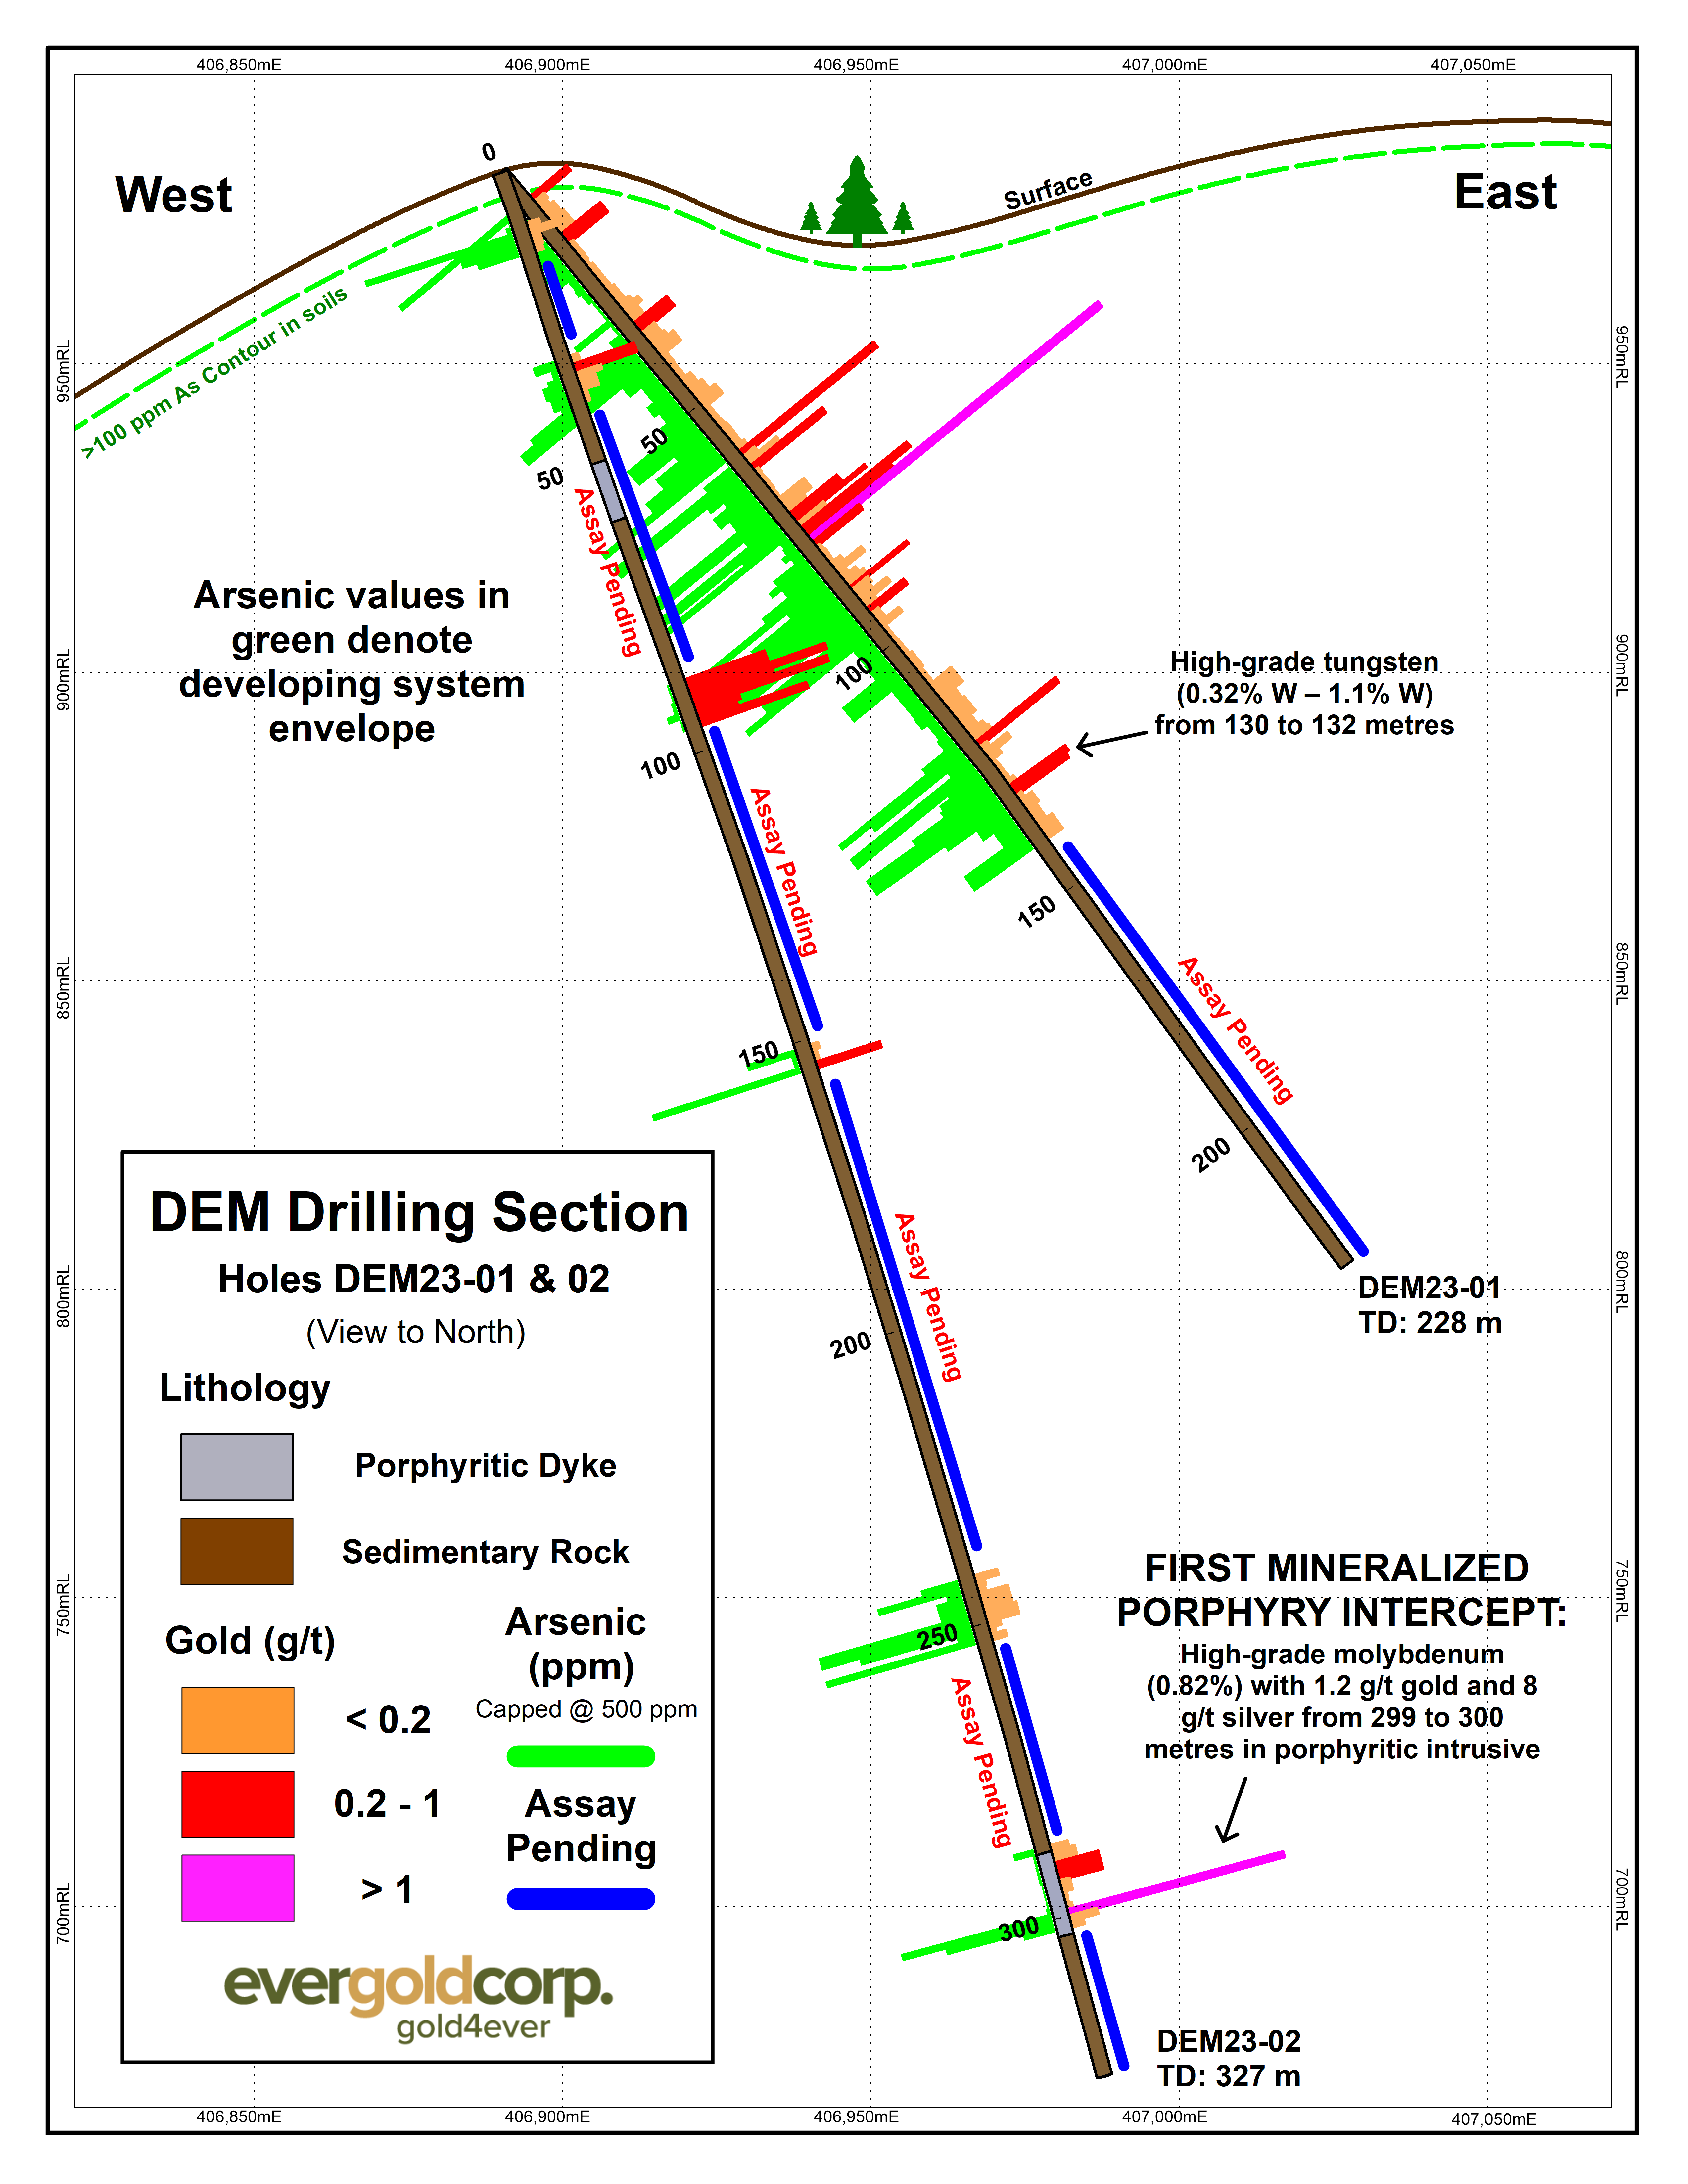 Figure 3 - DEM Drilling Section, Holes DEM23-01 & 02